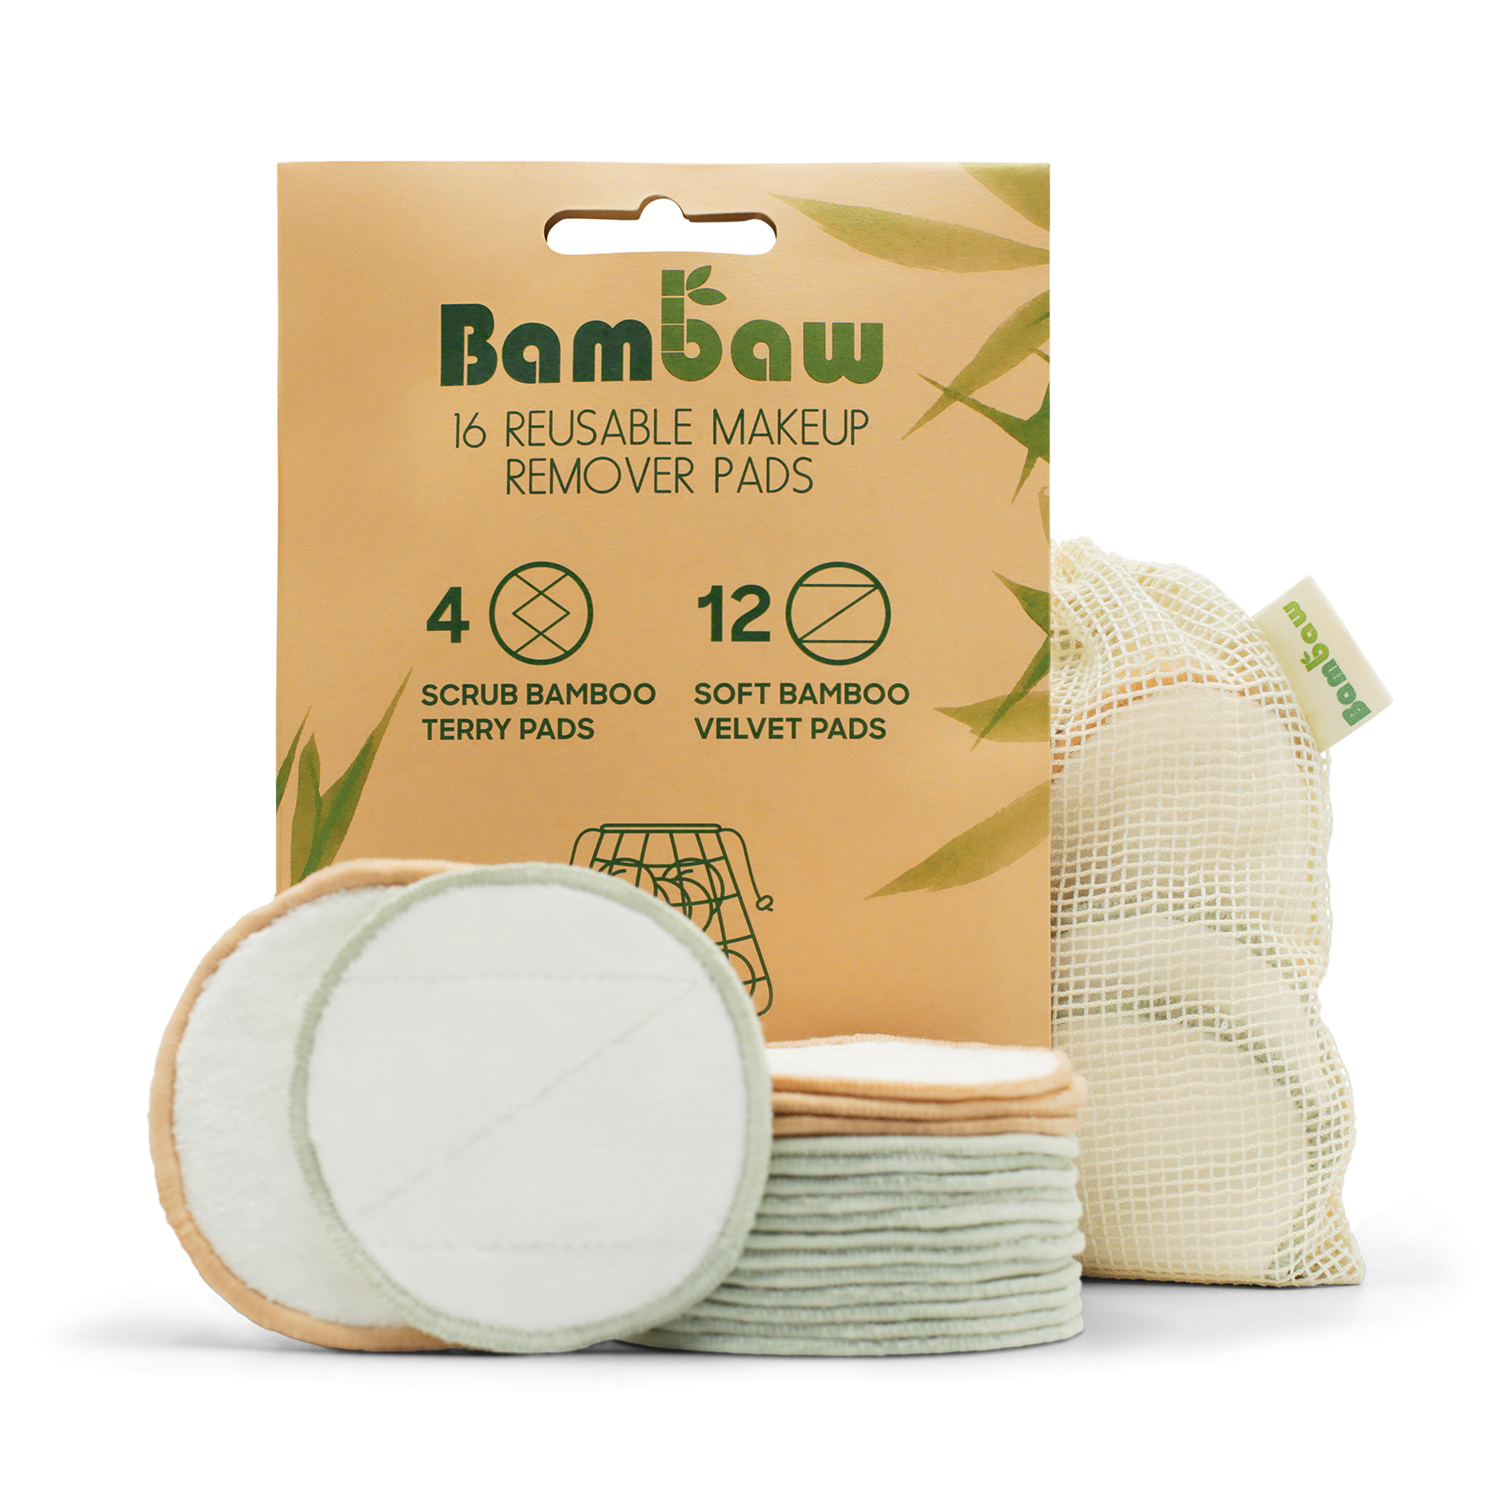 Bambaw Bamboo Makeup Remover Pads Main